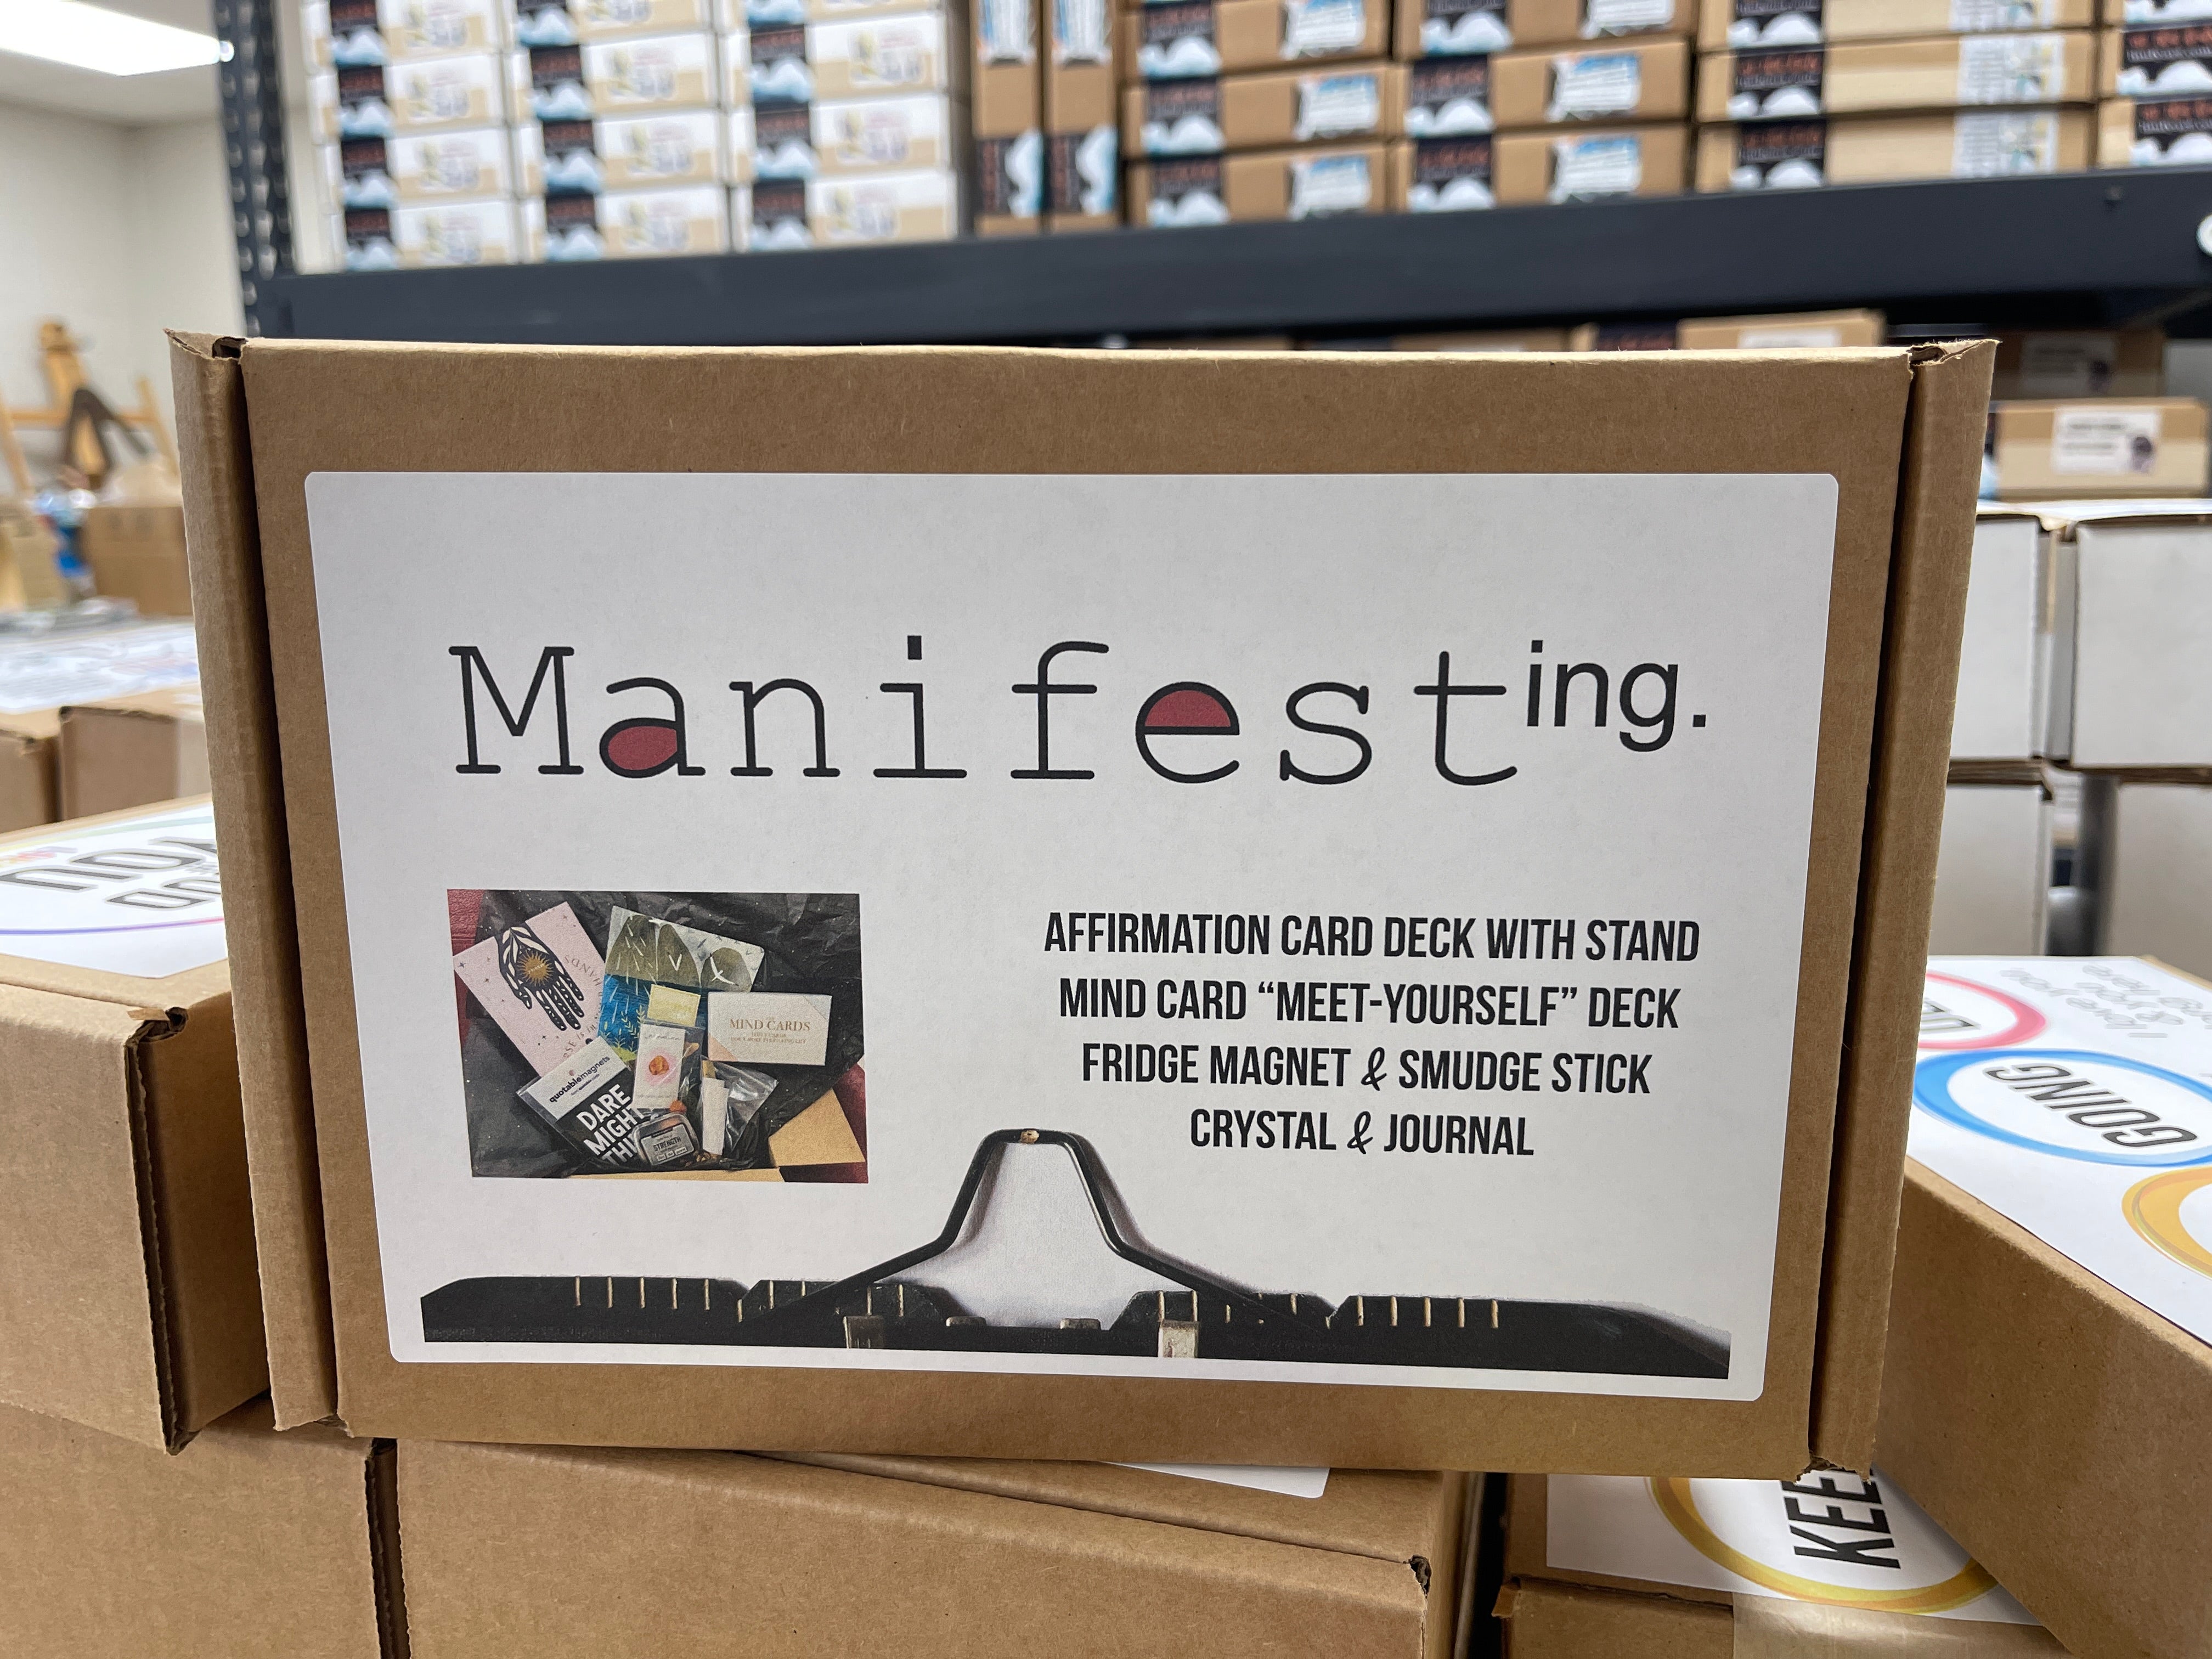 Manifest-ing